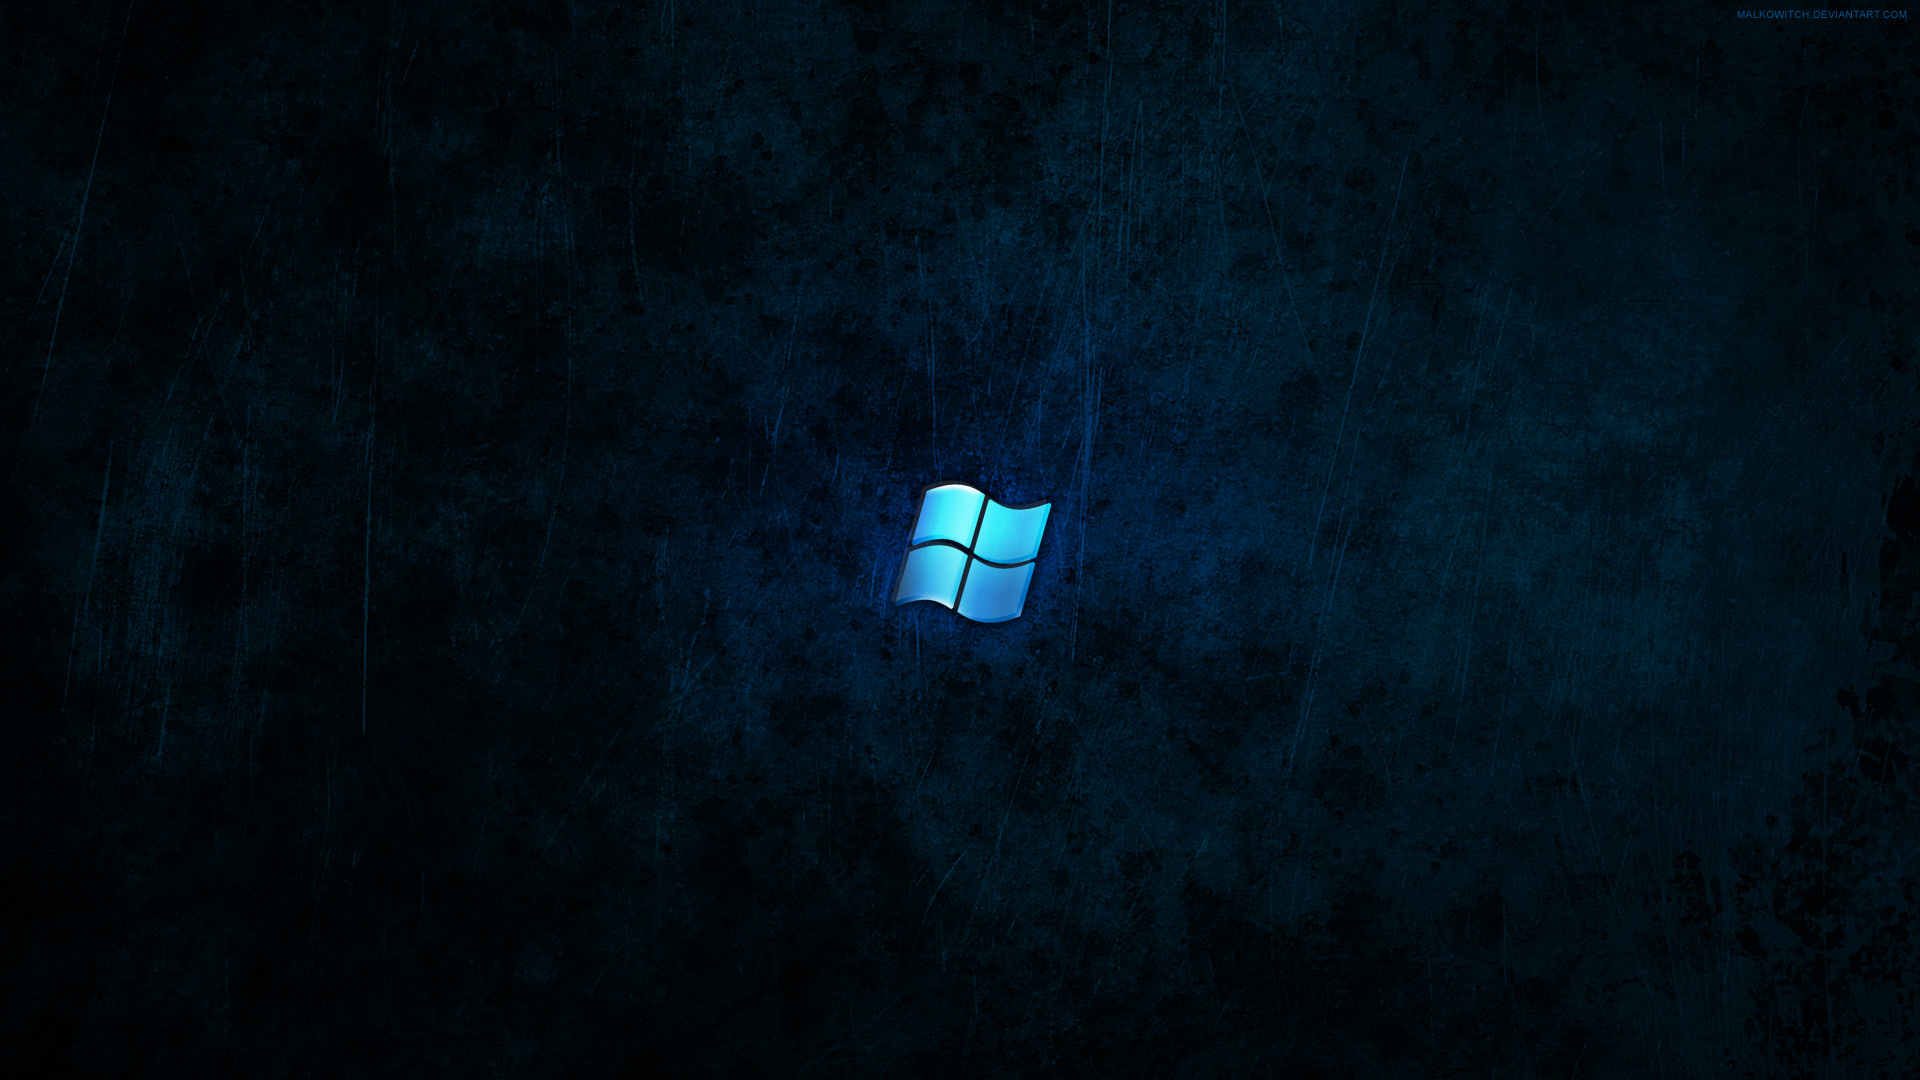 [49+] Dark Windows 10 Wallpapers | WallpaperSafari.com